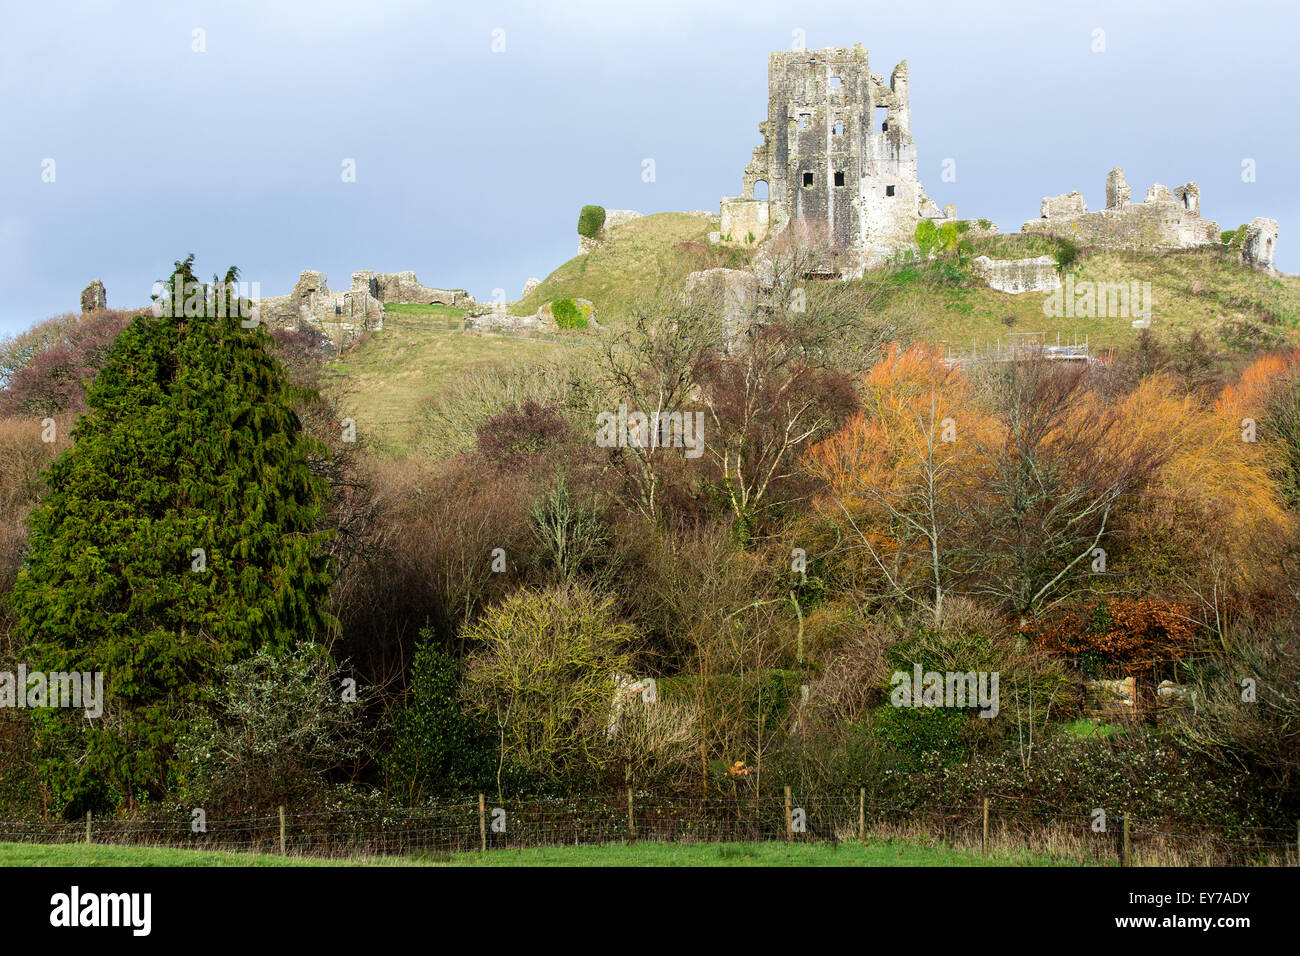 Une vue sur les vestiges historiques du 11ème siècle château de Corfe, construit par Guillaume le Conquérant dans le Dorset, en Angleterre sur une journée l'hiver Banque D'Images